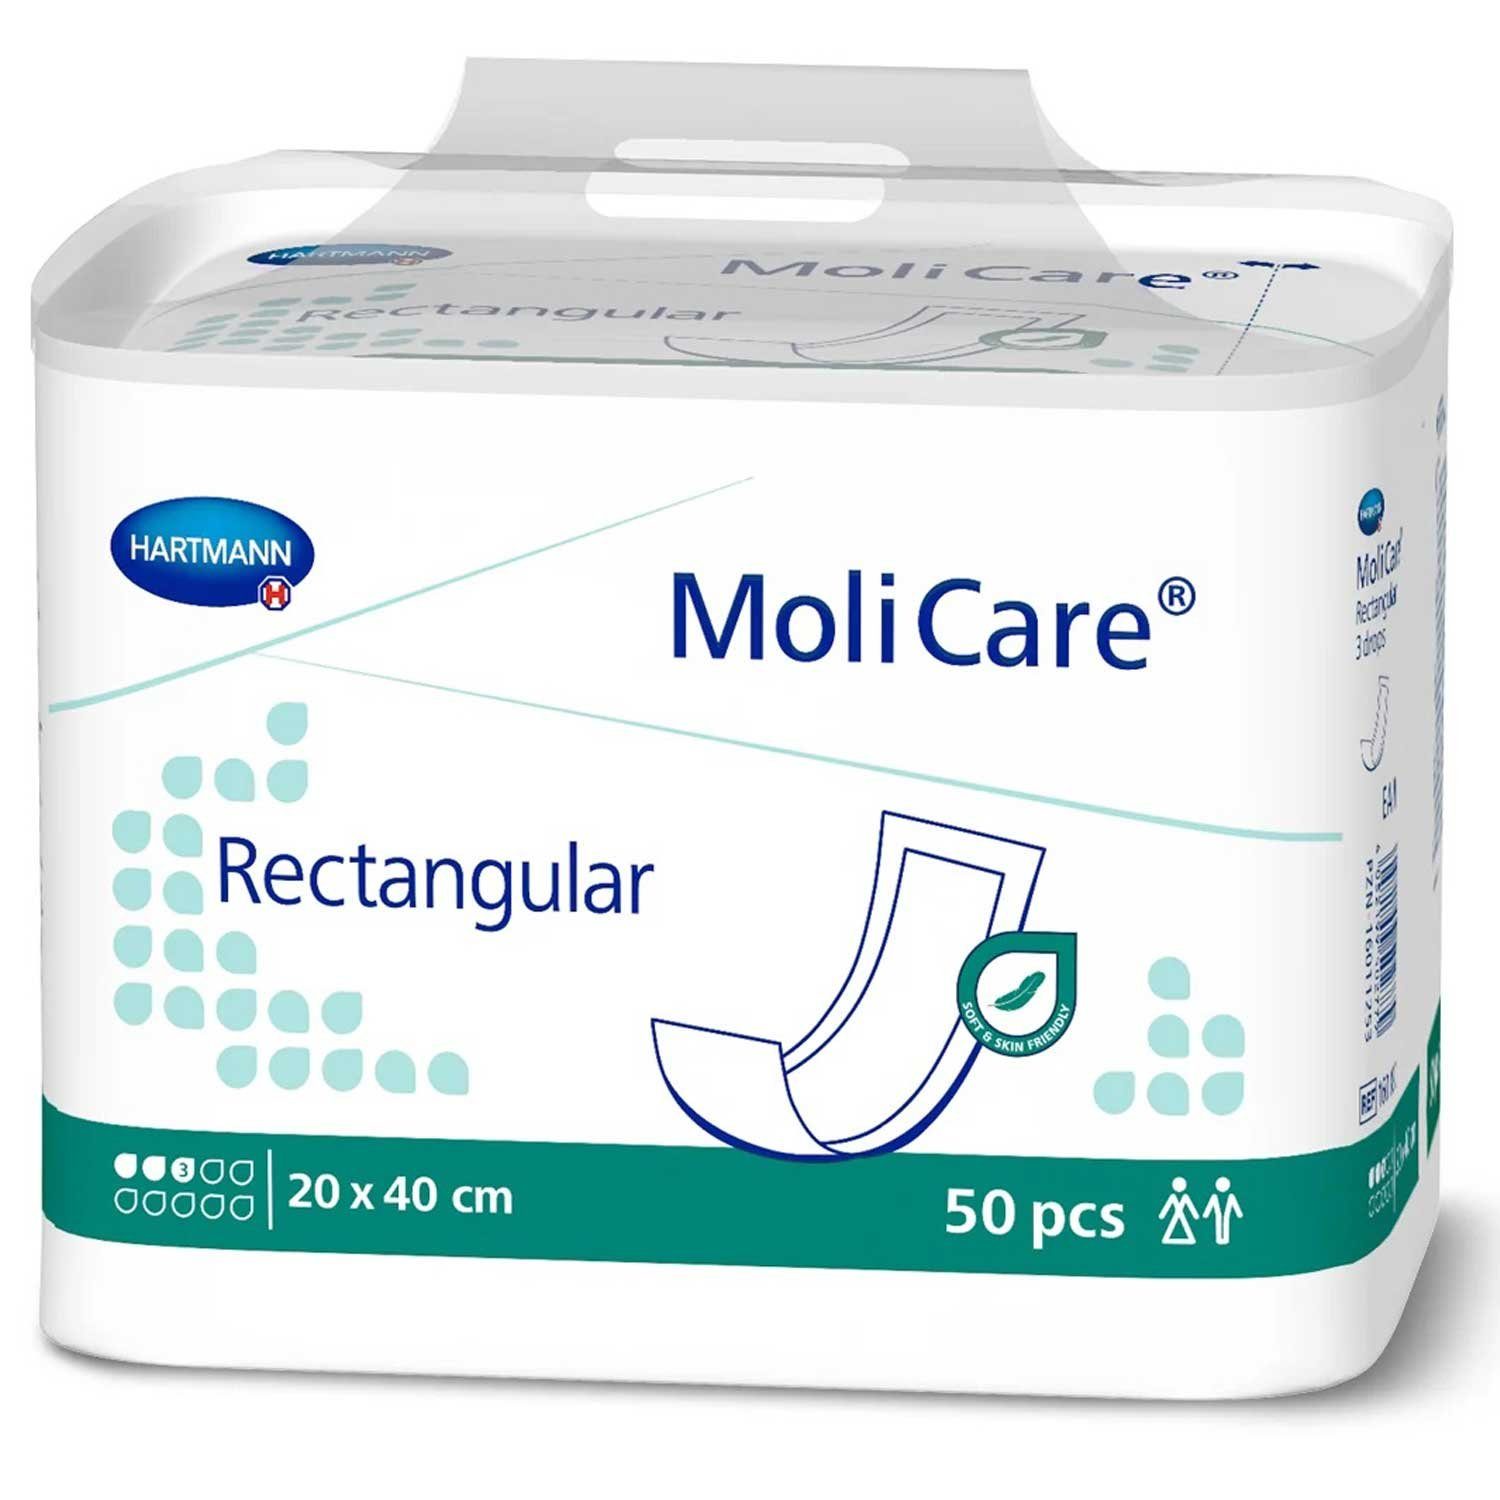 Inkontinenzauflage MoliCare® Rectangular 20 x 40 cm Karton á 6 Molicare, Dermatologisch getestet